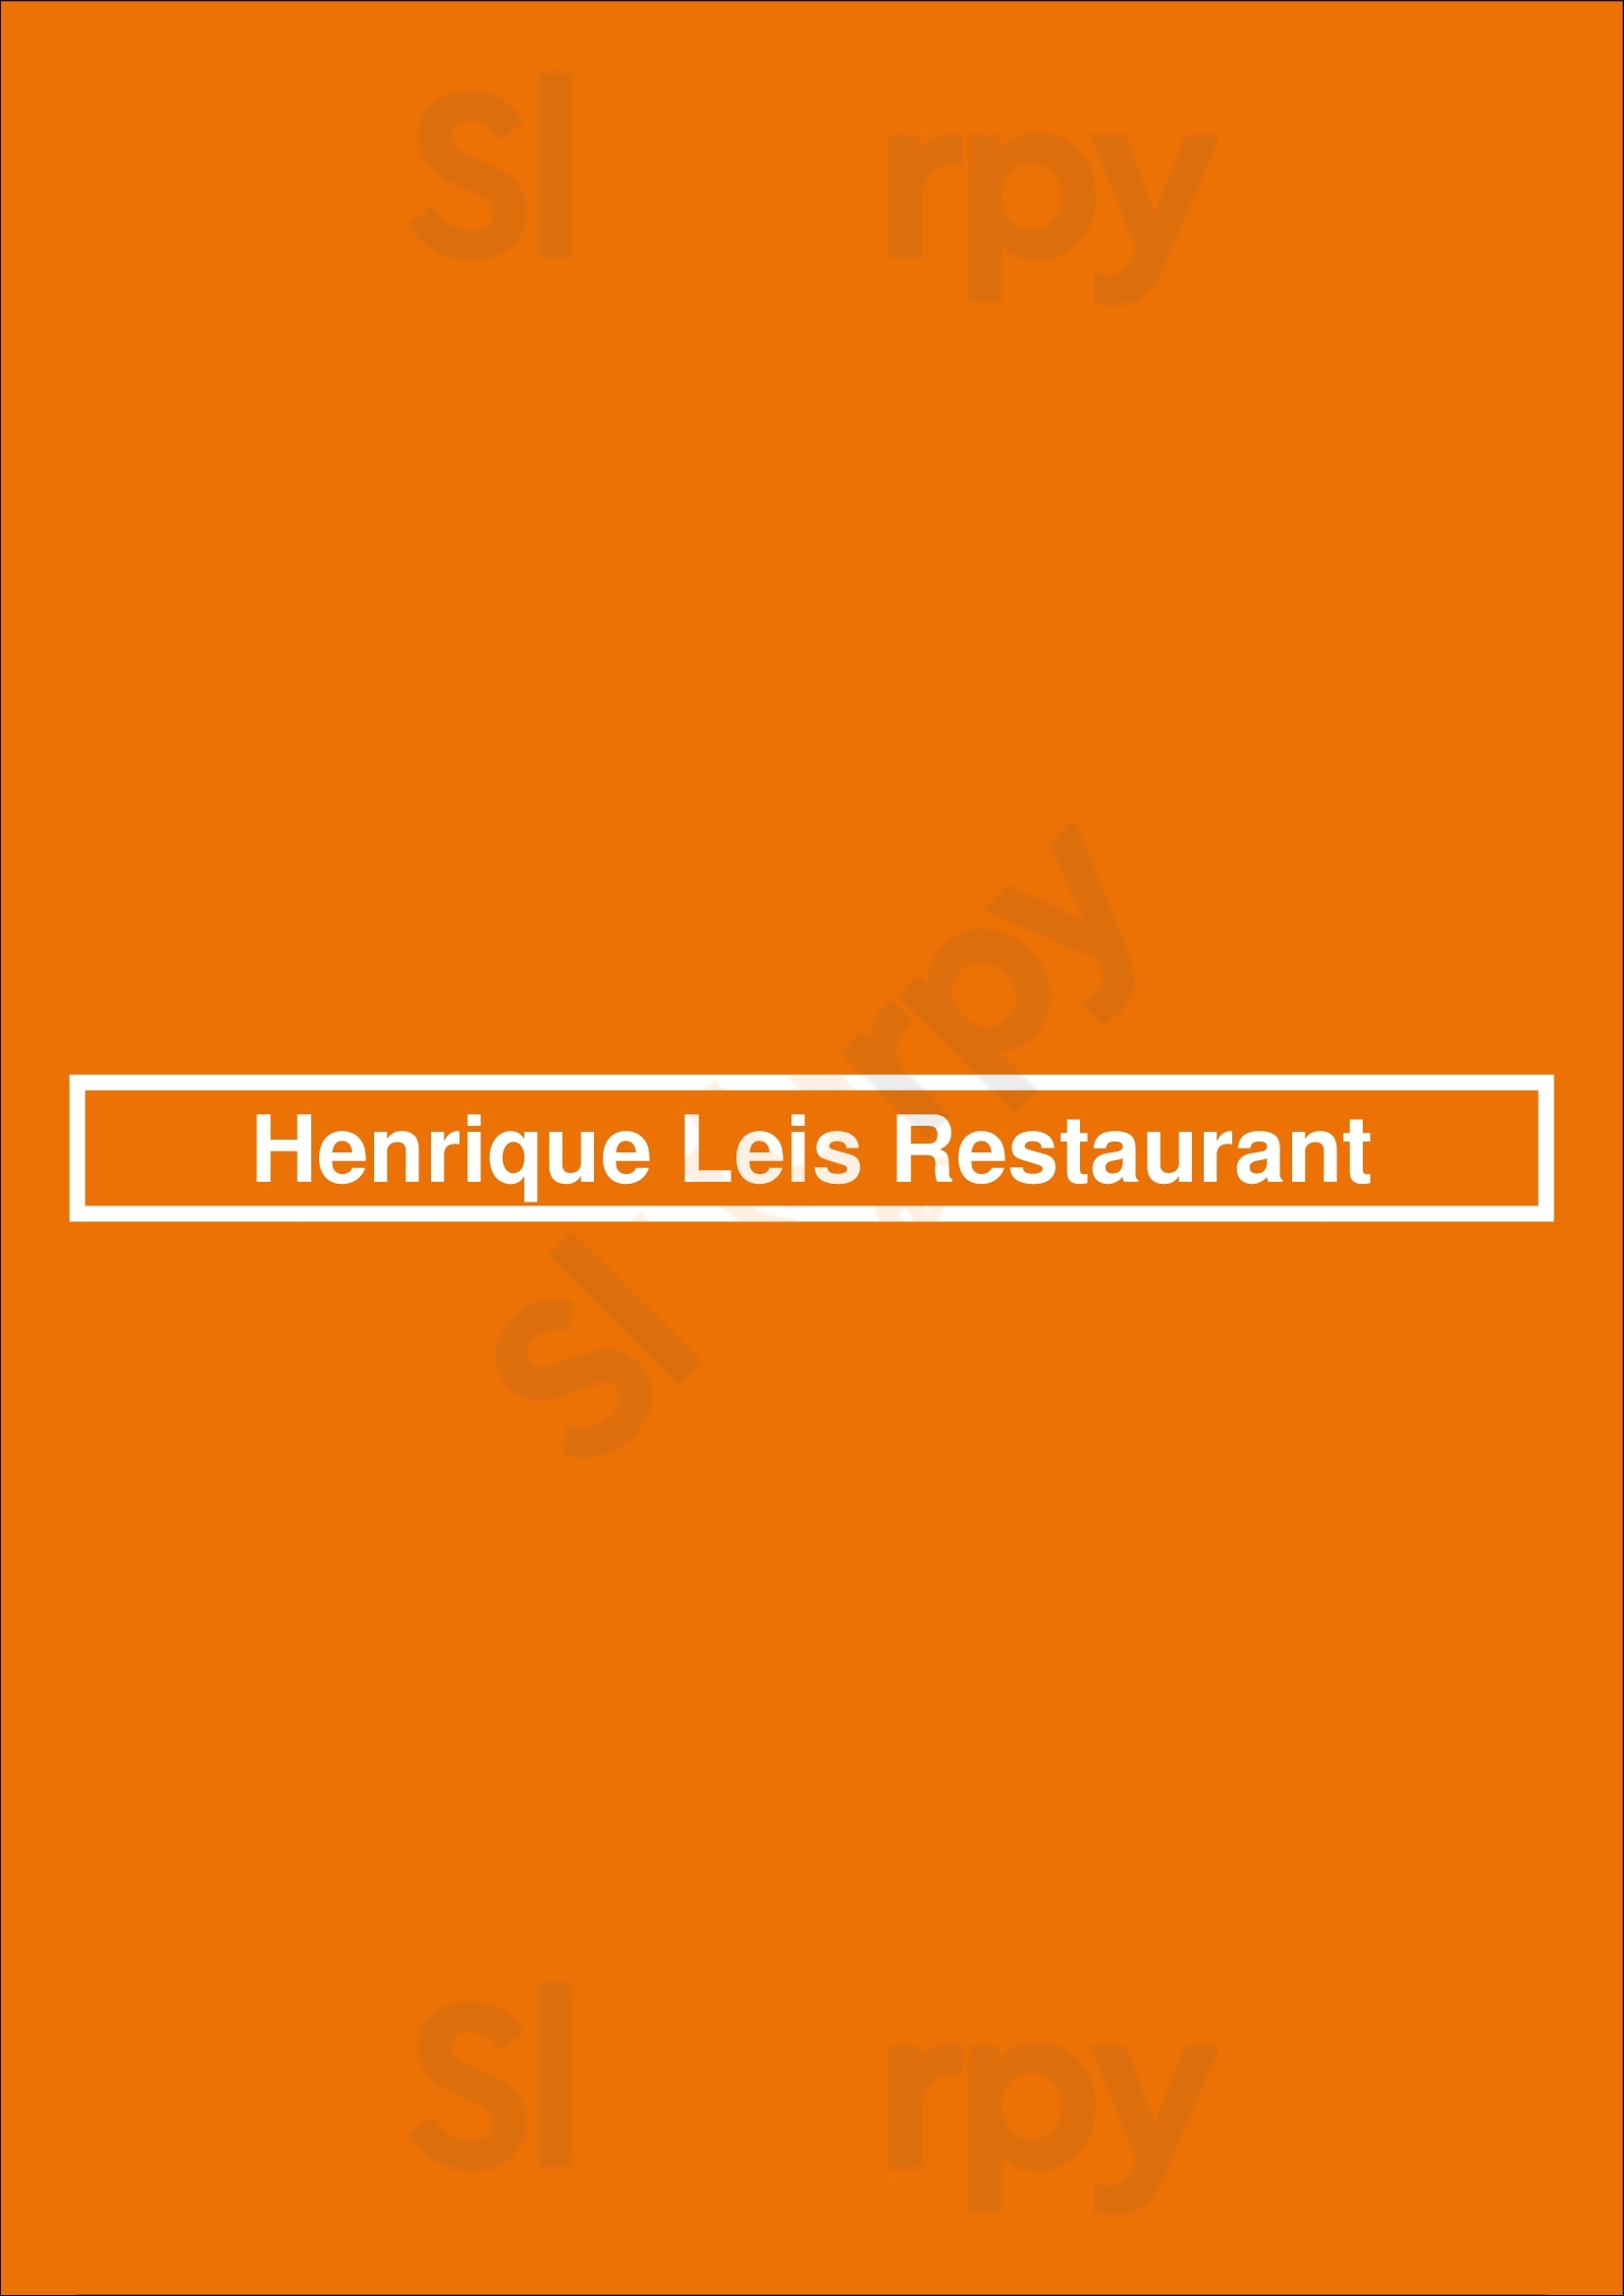 Henrique Leis Restaurant Loulé Menu - 1